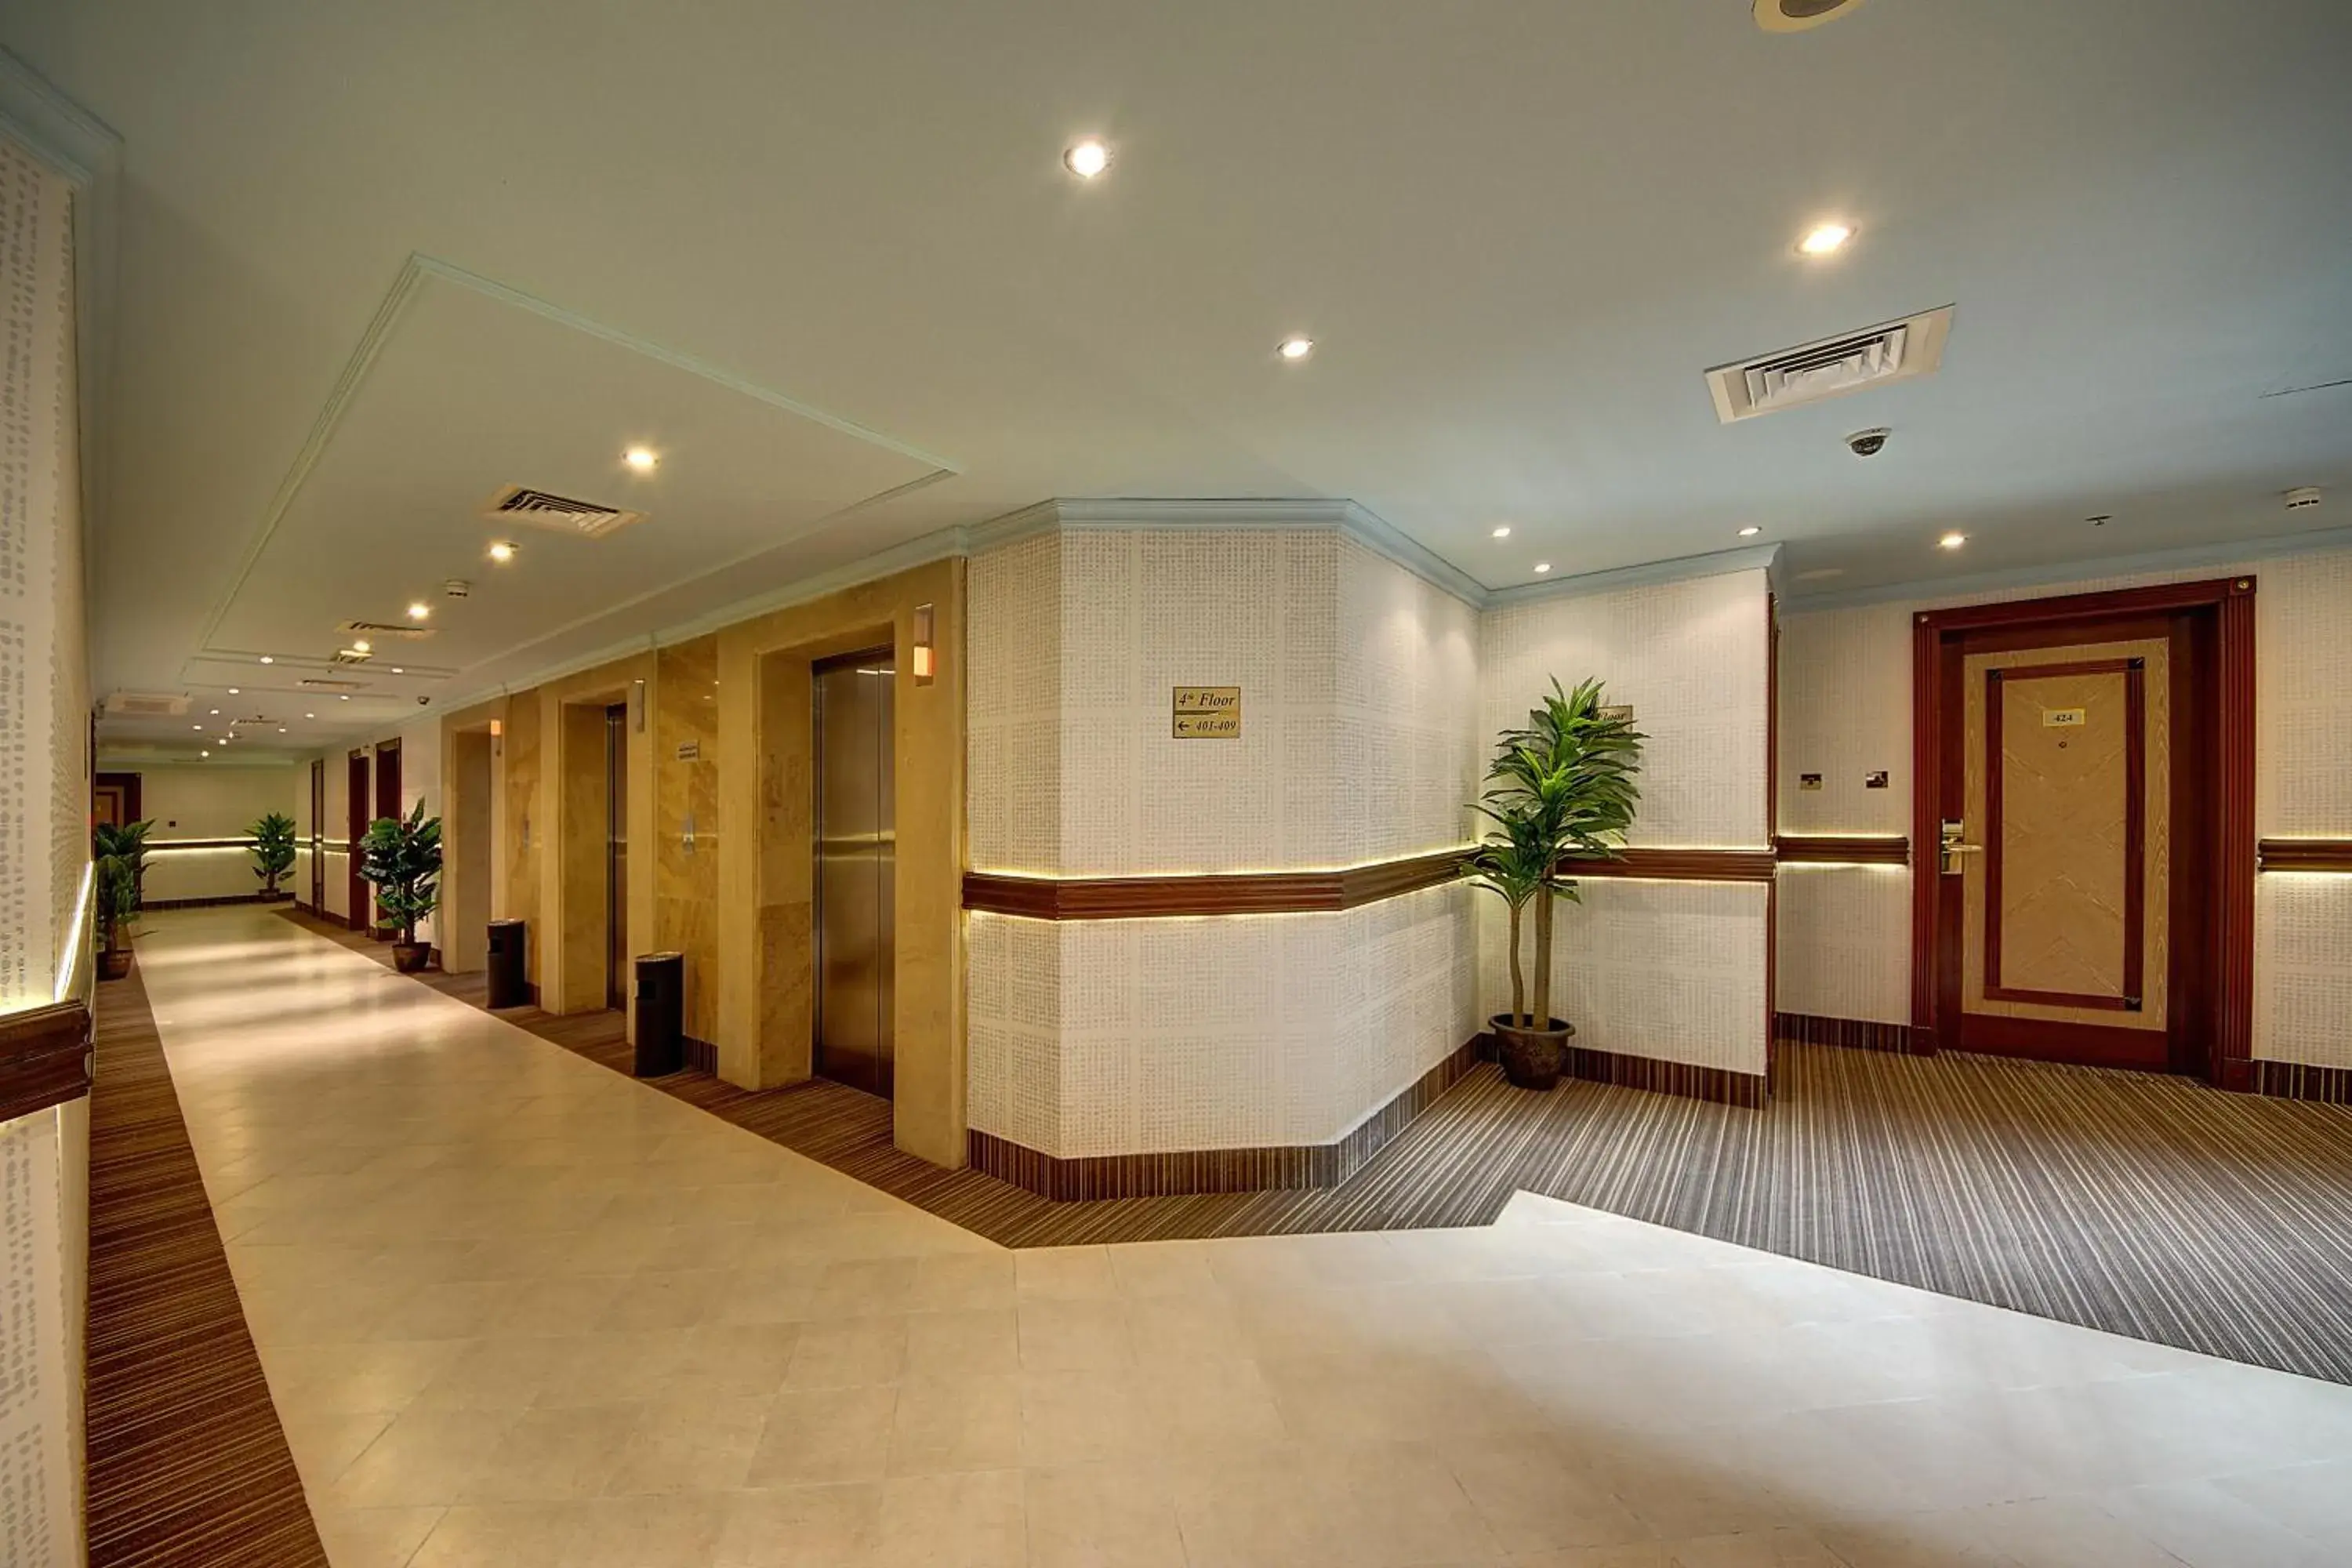 Lobby or reception, Lobby/Reception in Al Manar Grand Hotel Apartment